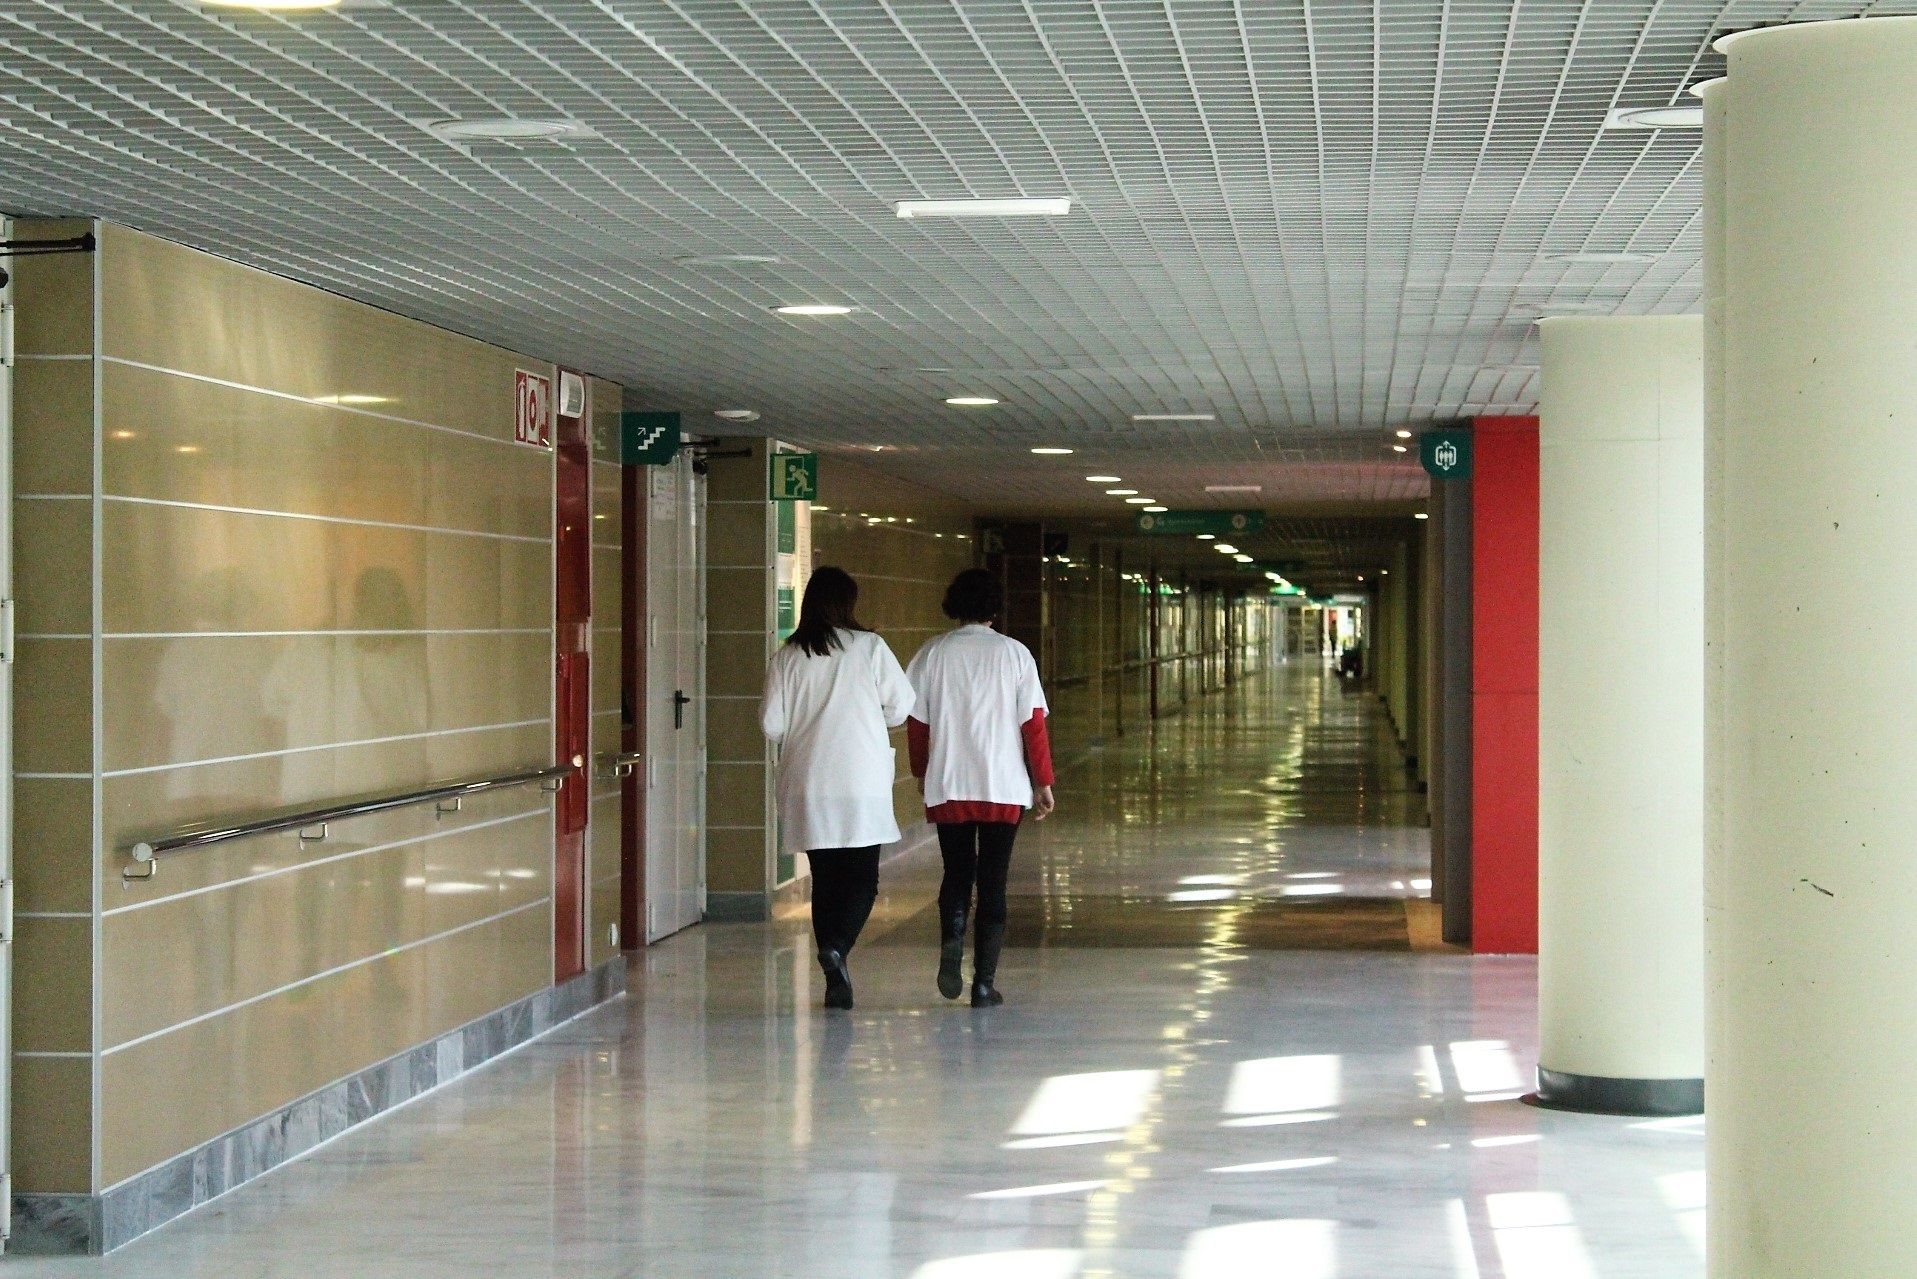 La OMS pide repensar el diseño de los hospitales: "Más que ladrillos, deben ser entidades vivas"